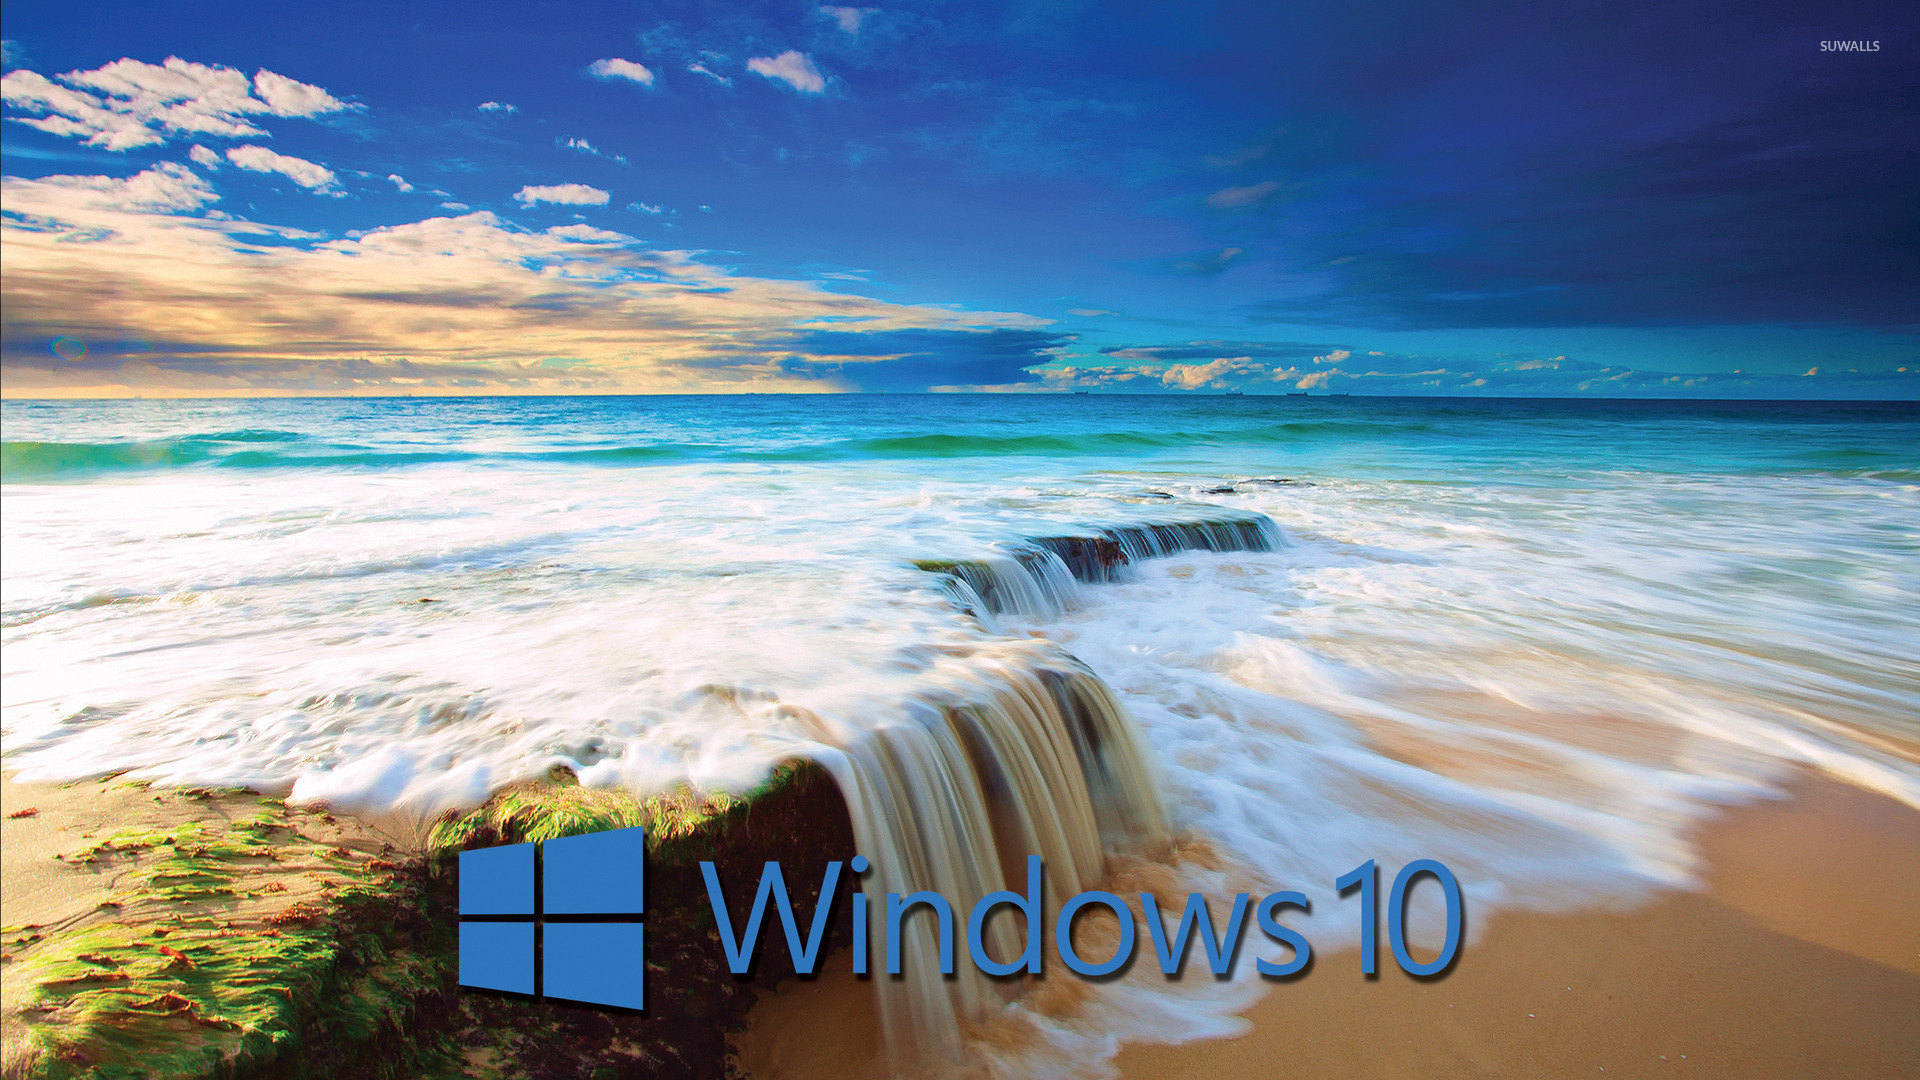 Windows 10 blue text logo on the golden beach wallpaper   Computer